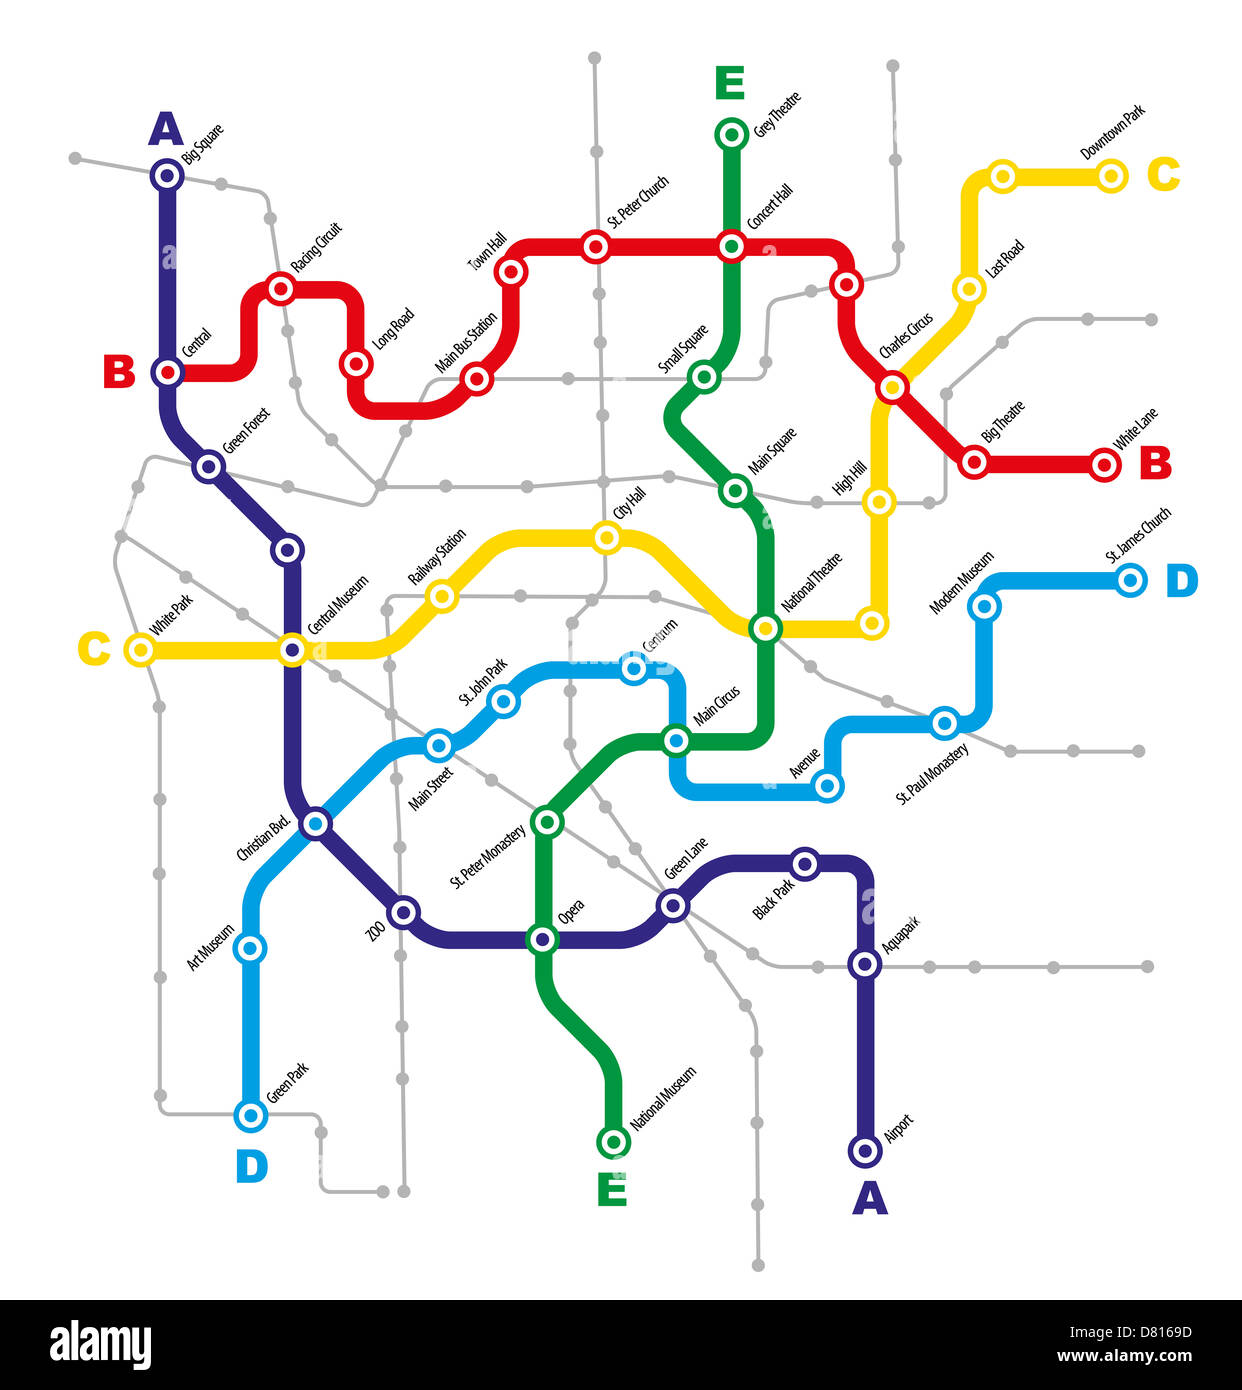 Plan de transport public de la ville fictive sur fond blanc Banque D'Images